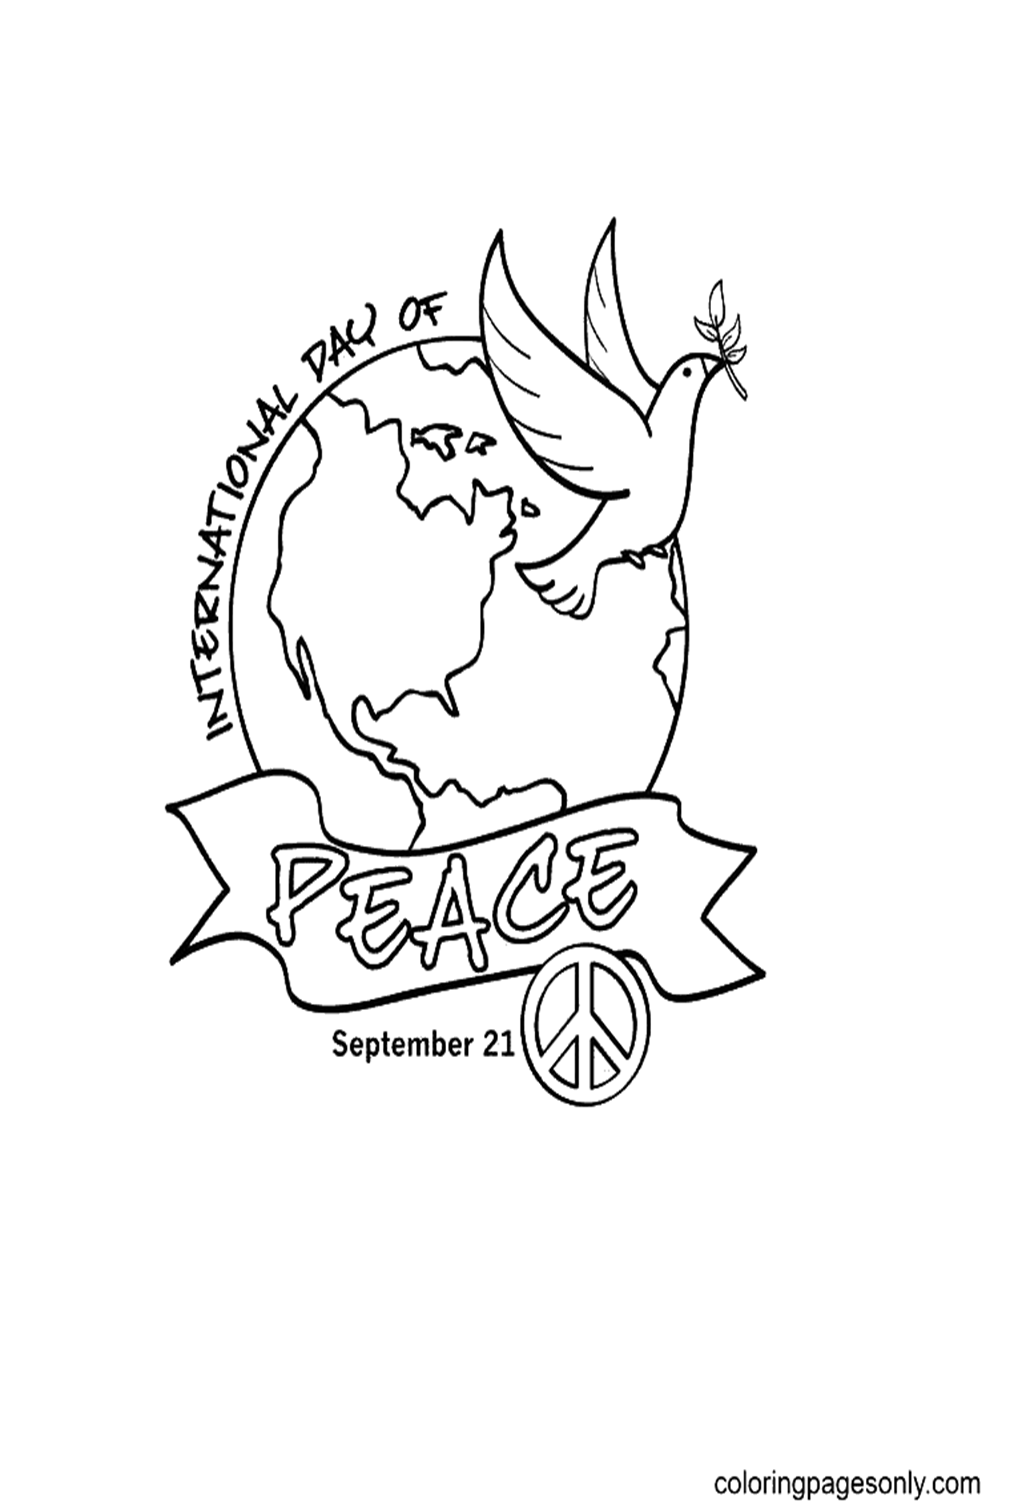 Día Internacional de la Paz del Día Internacional de la Paz